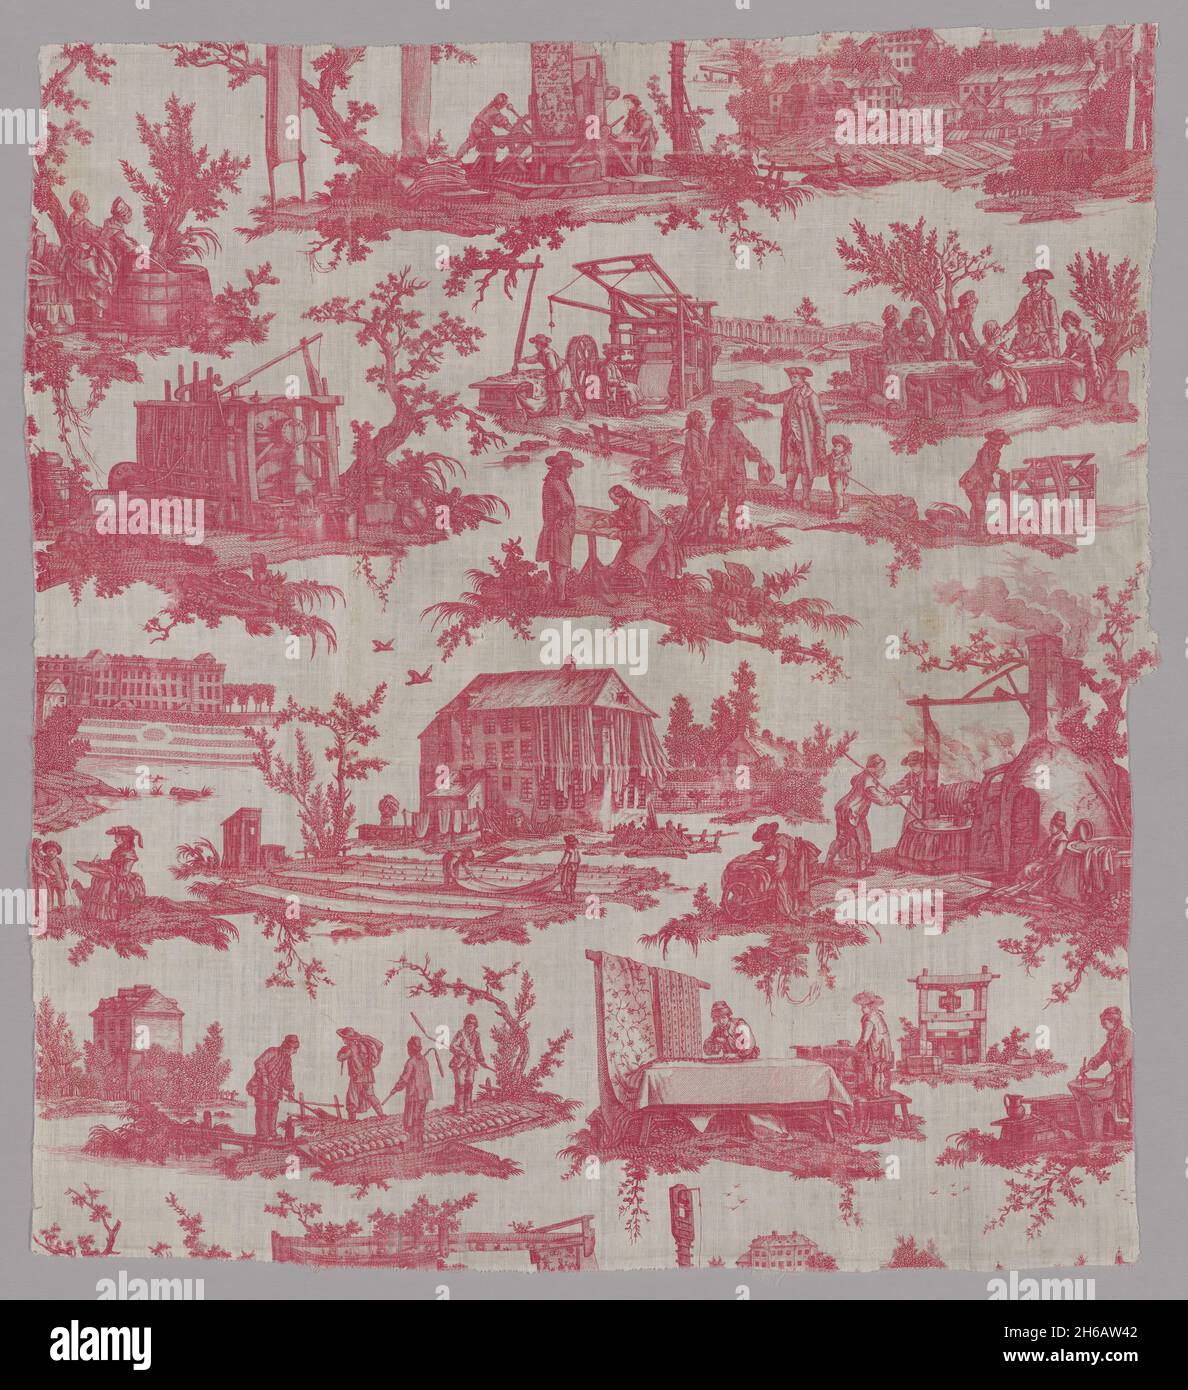 Les Travaux de la Manufacture (le attività della fabbrica) (tessuti d'arredamento), Francia, 1783/84. Tintura e stampa di tessuti prodotti in serie. Progettato da Jean Baptiste Huet, prodotto da Oberkampf Manufactory. Foto Stock